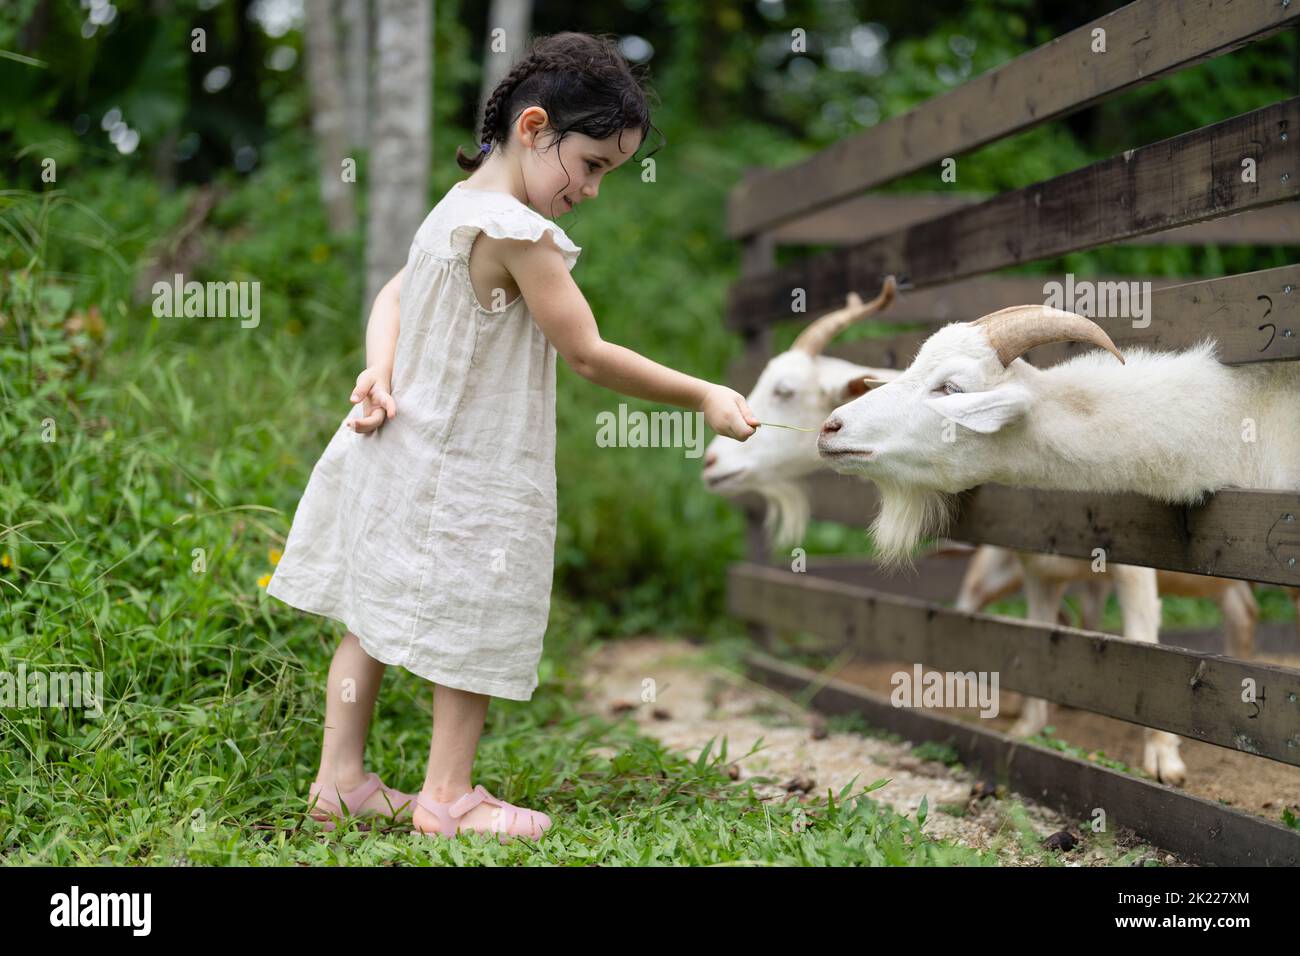 fille de 4 ans nourrissant des chèvres Banque D'Images